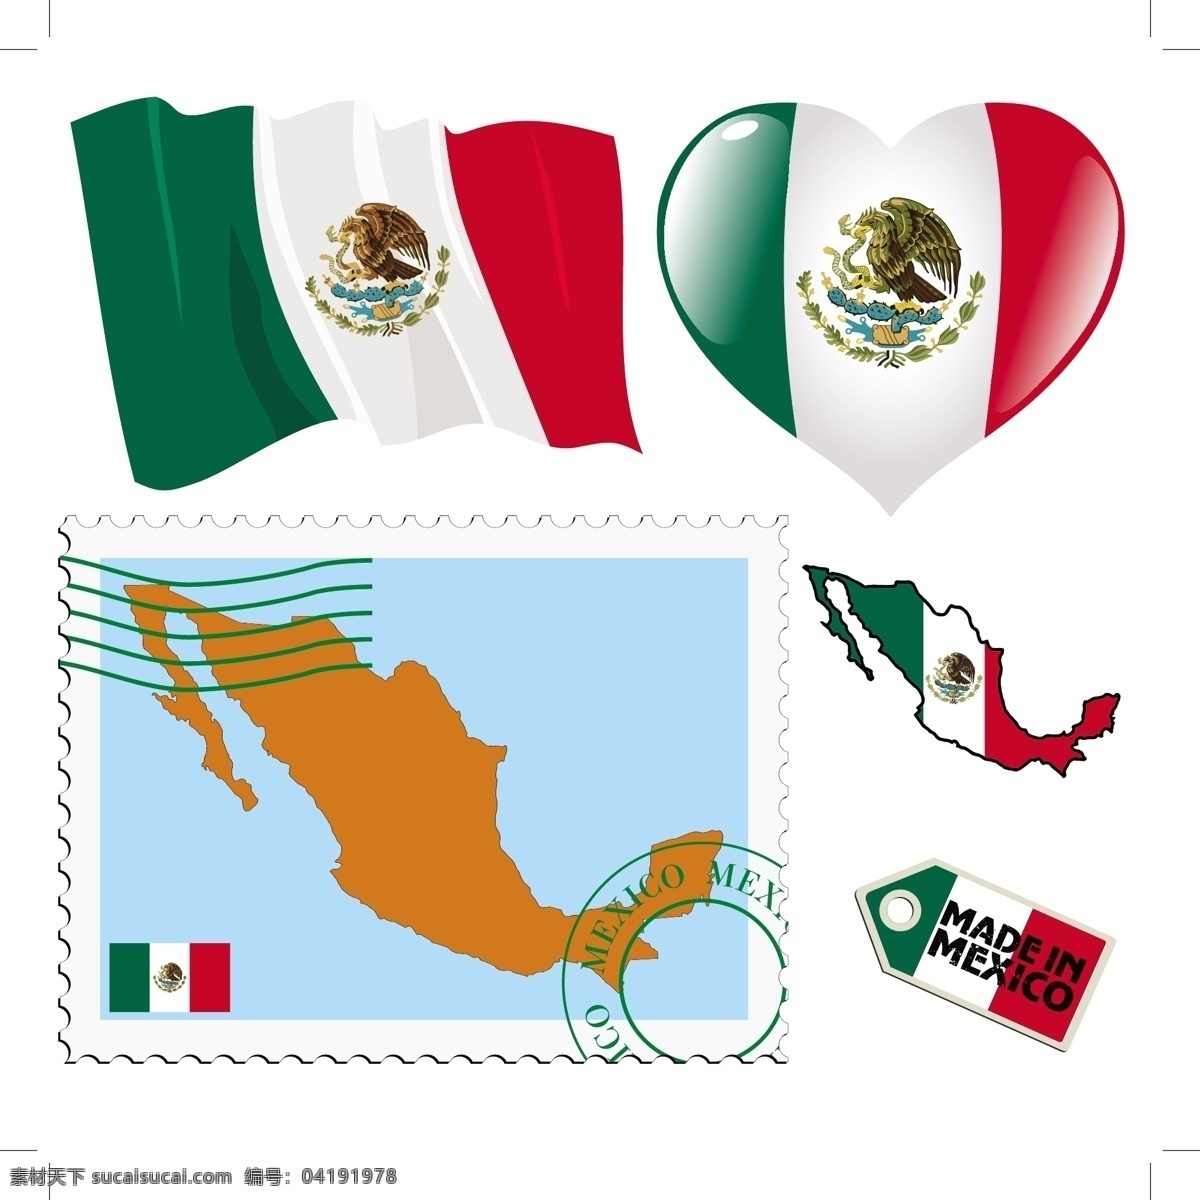 墨西哥 图案 邮票 图标 标签 墨西哥国旗 矢量图案 边框底纹 背景图案 生活百科 矢量素材 白色